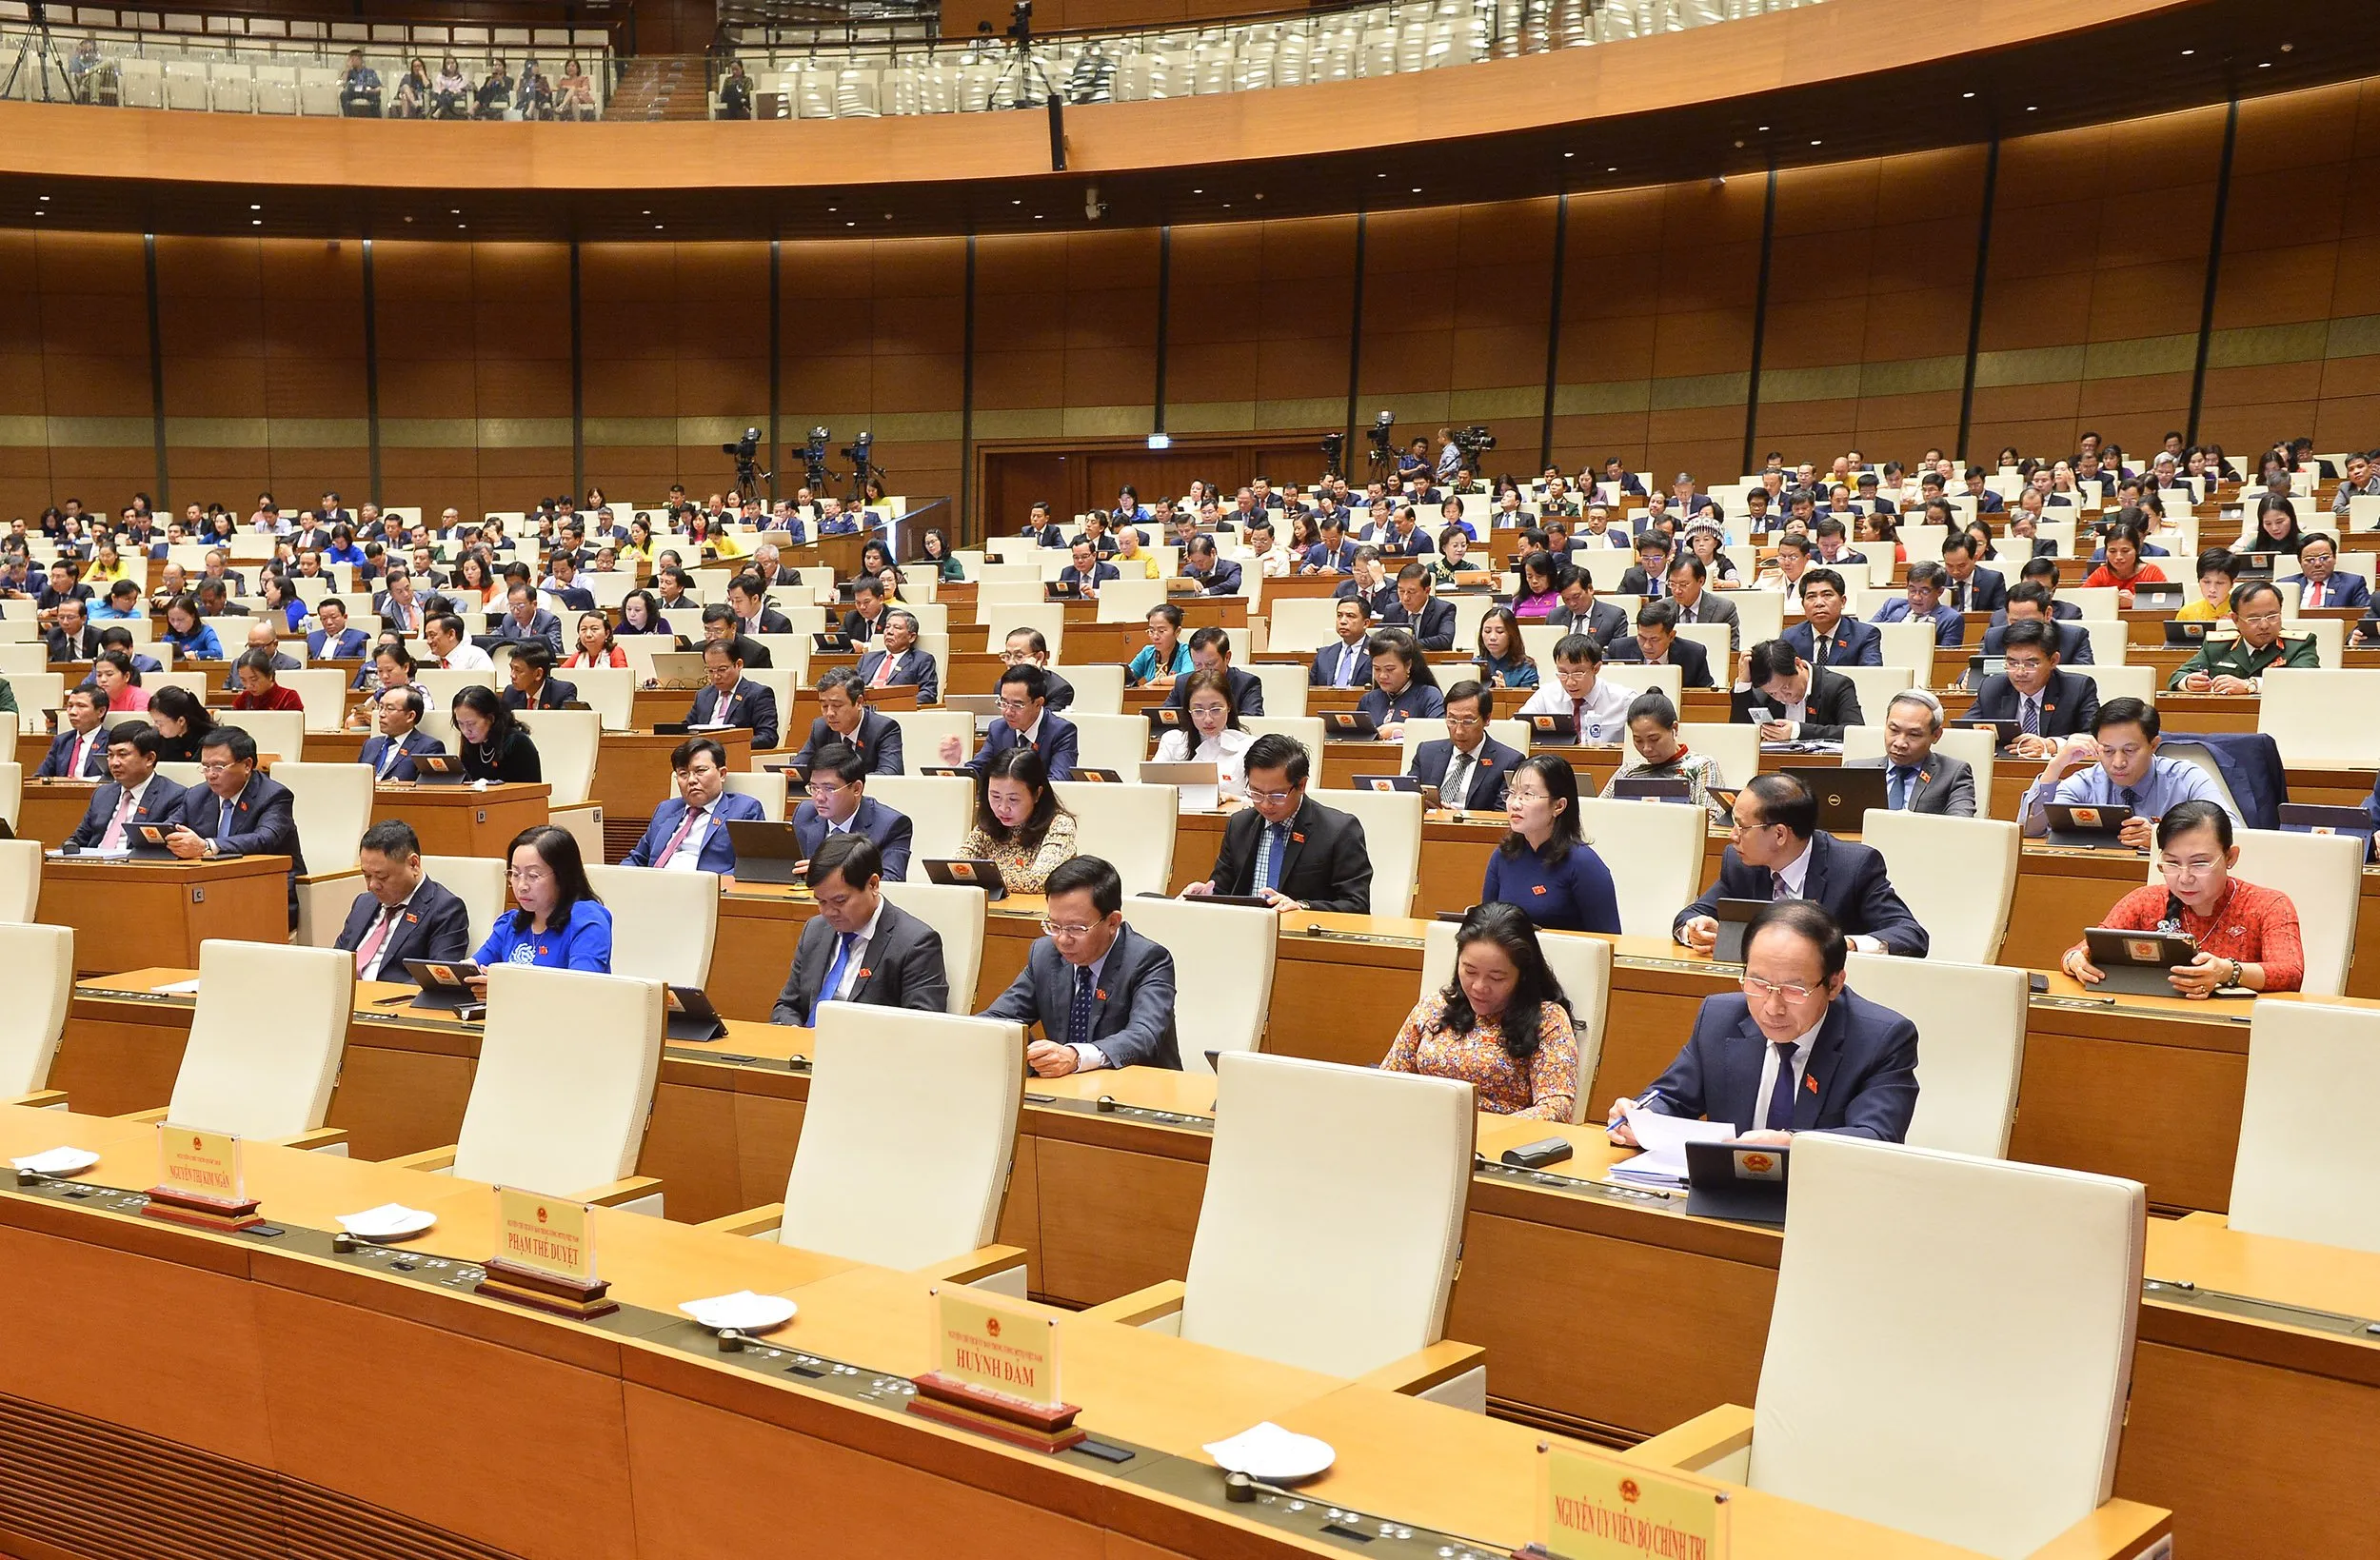 Kỳ họp thứ 4 Quốc hội khóa XV hoàn thành toàn bộ chương trình đề ra